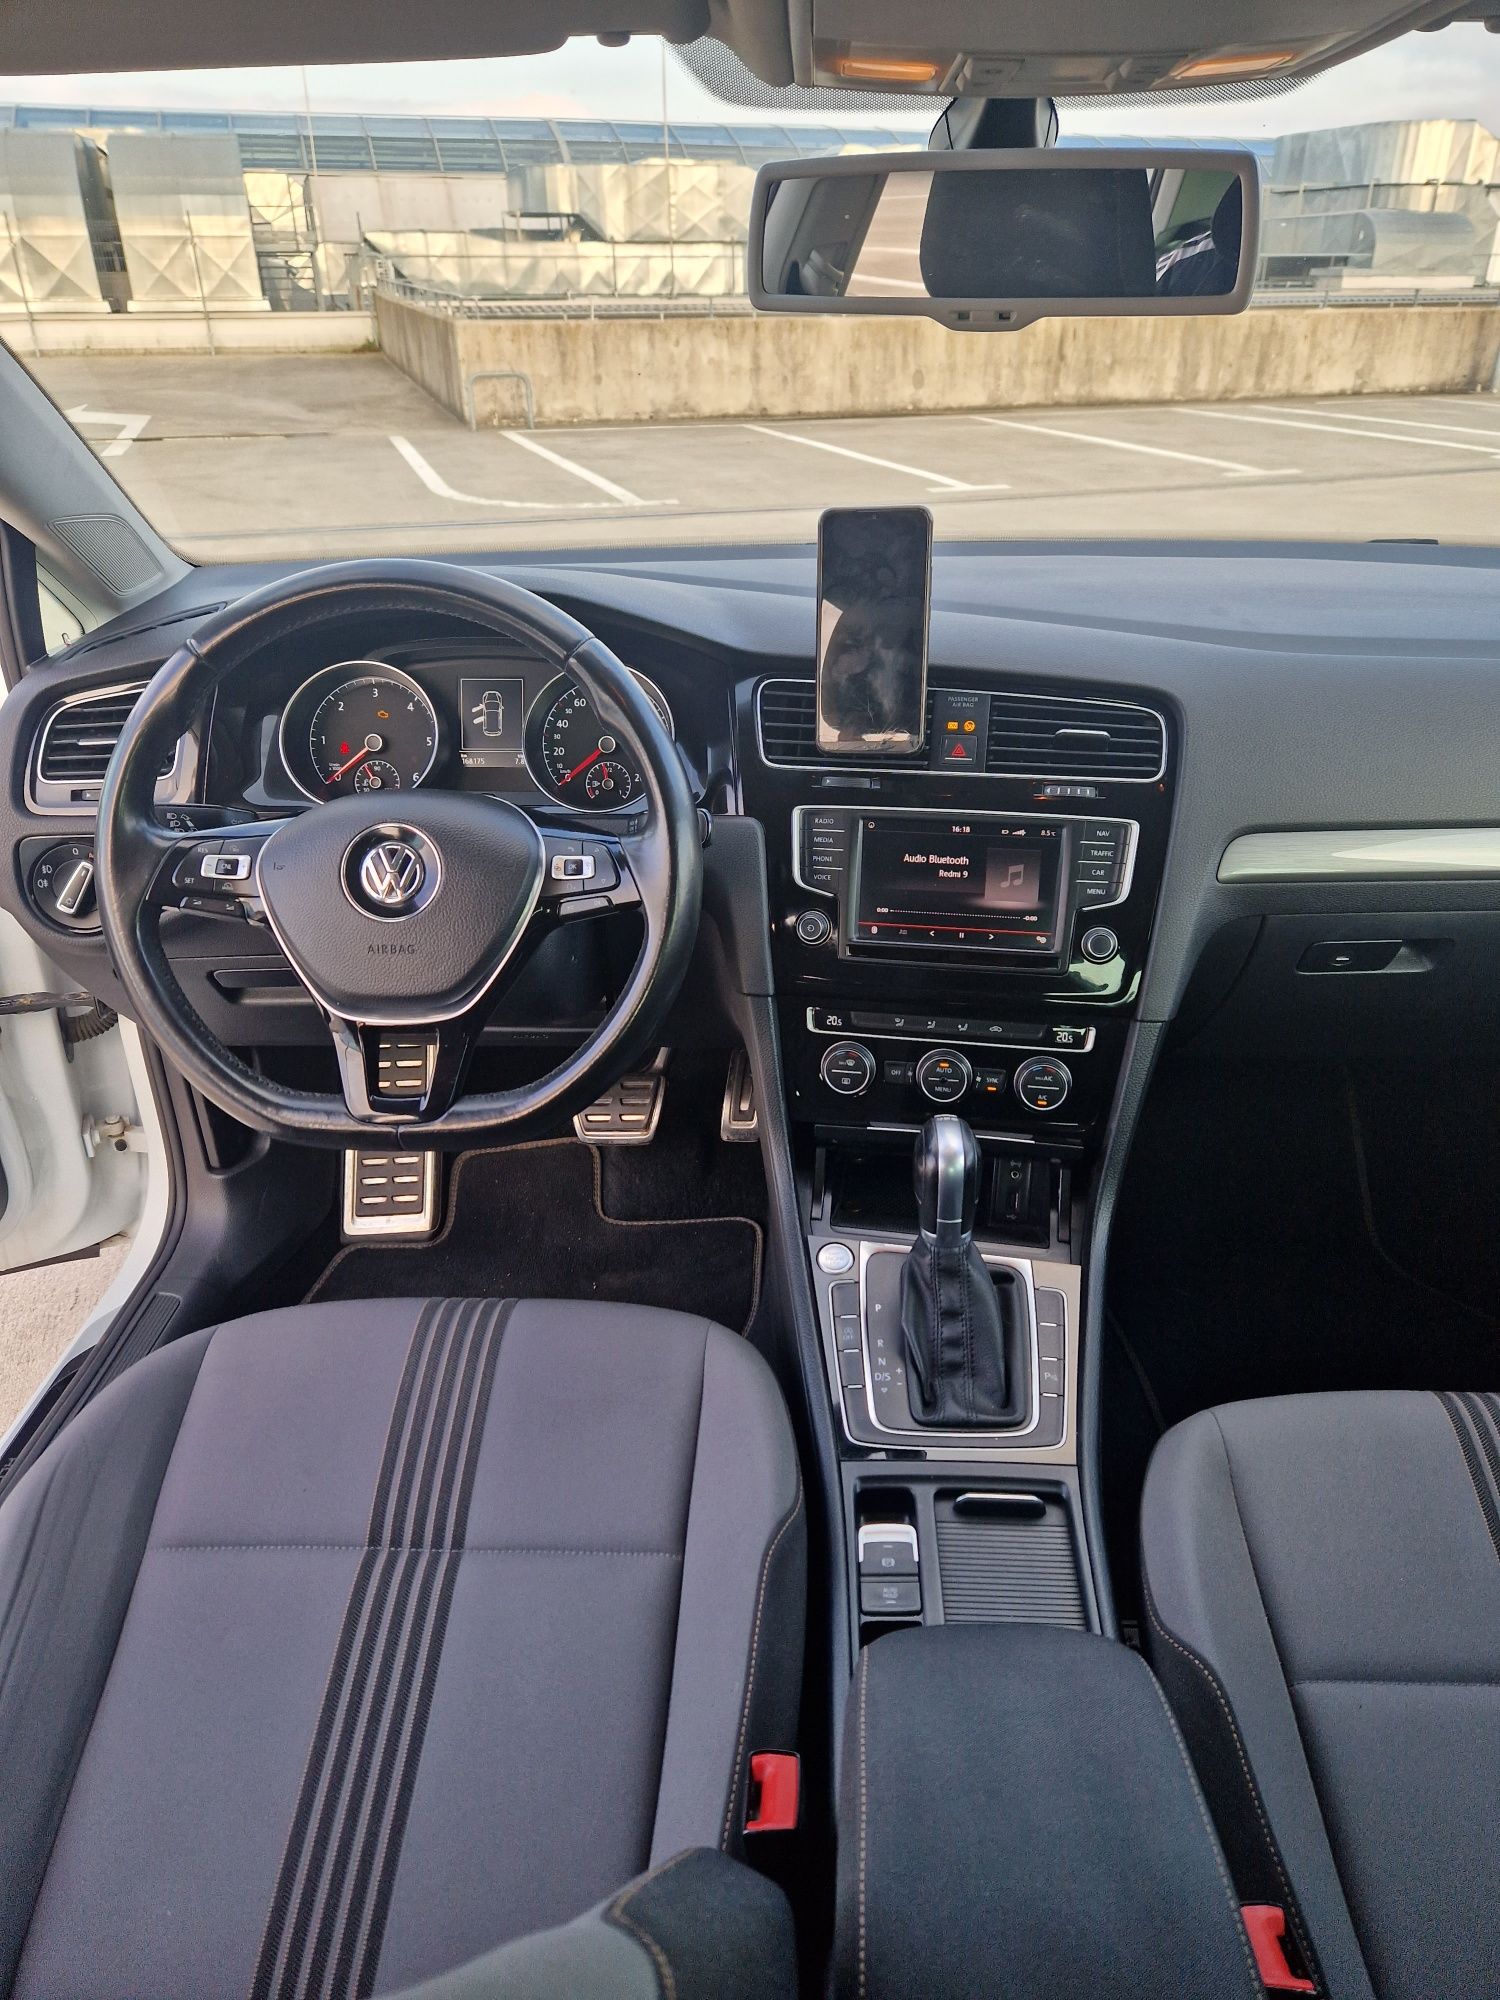 Volkswagen golf 7 VII 2016 limitowana wersja allstar